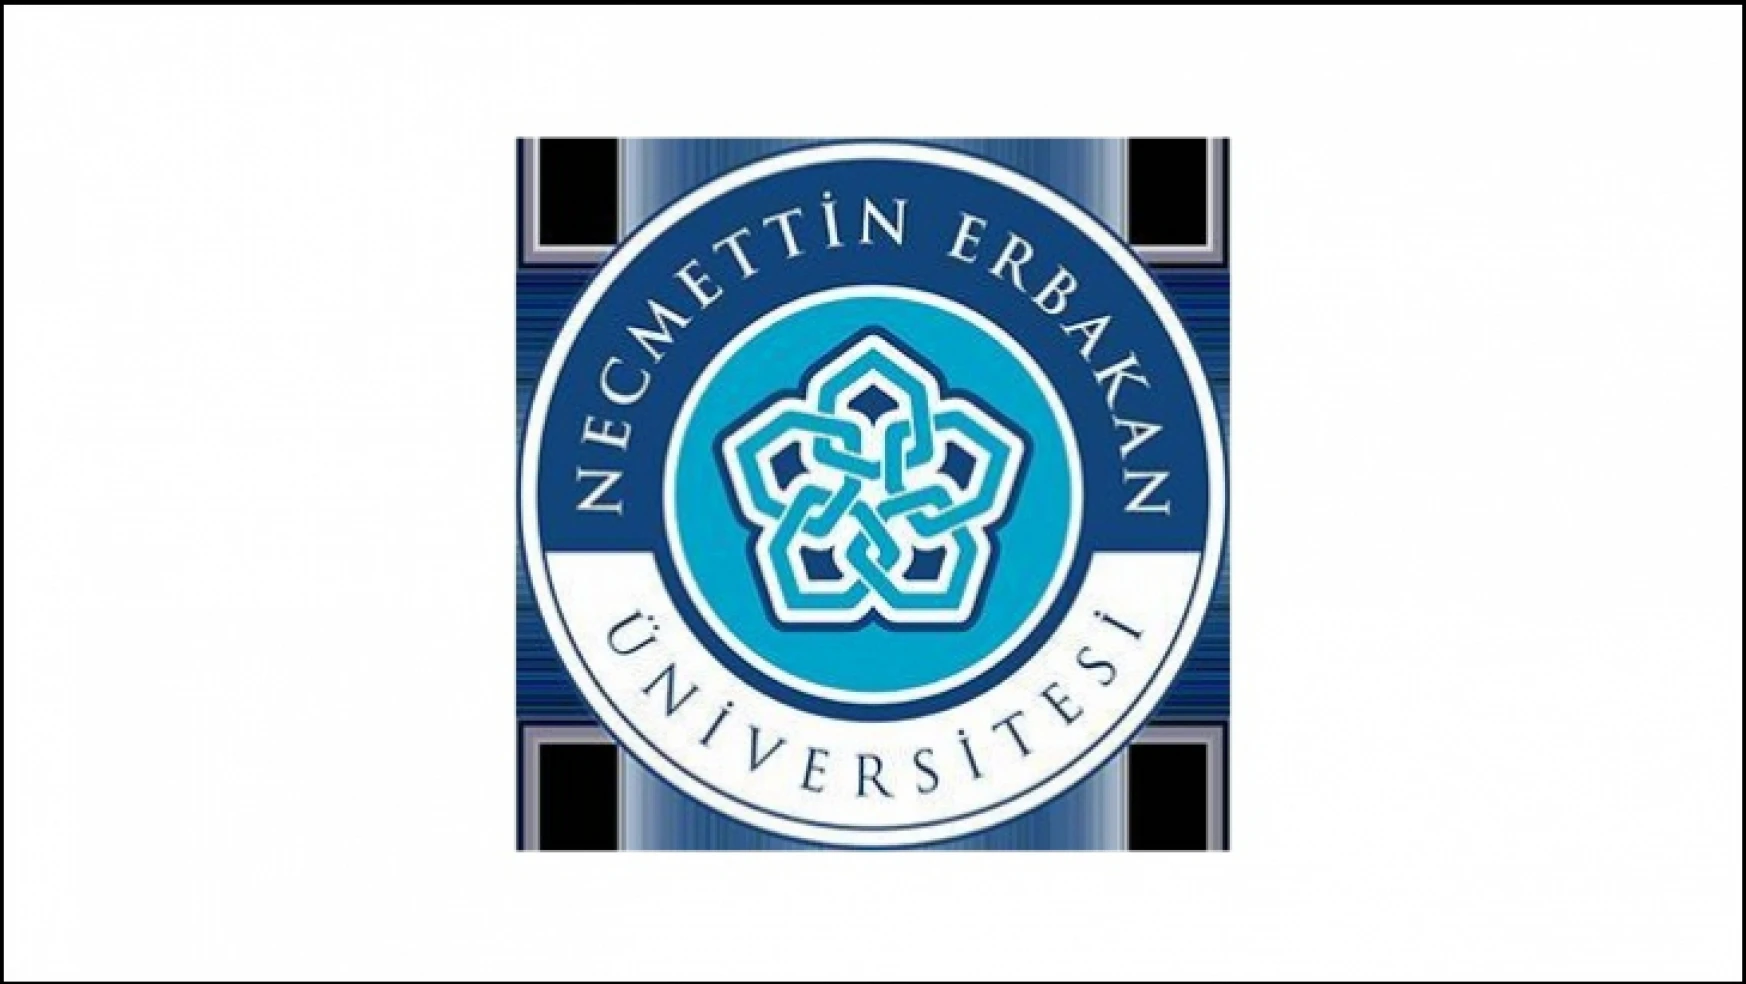 Necmettin Erbakan Üniversitesi 146 sözleşmeli personel alacak